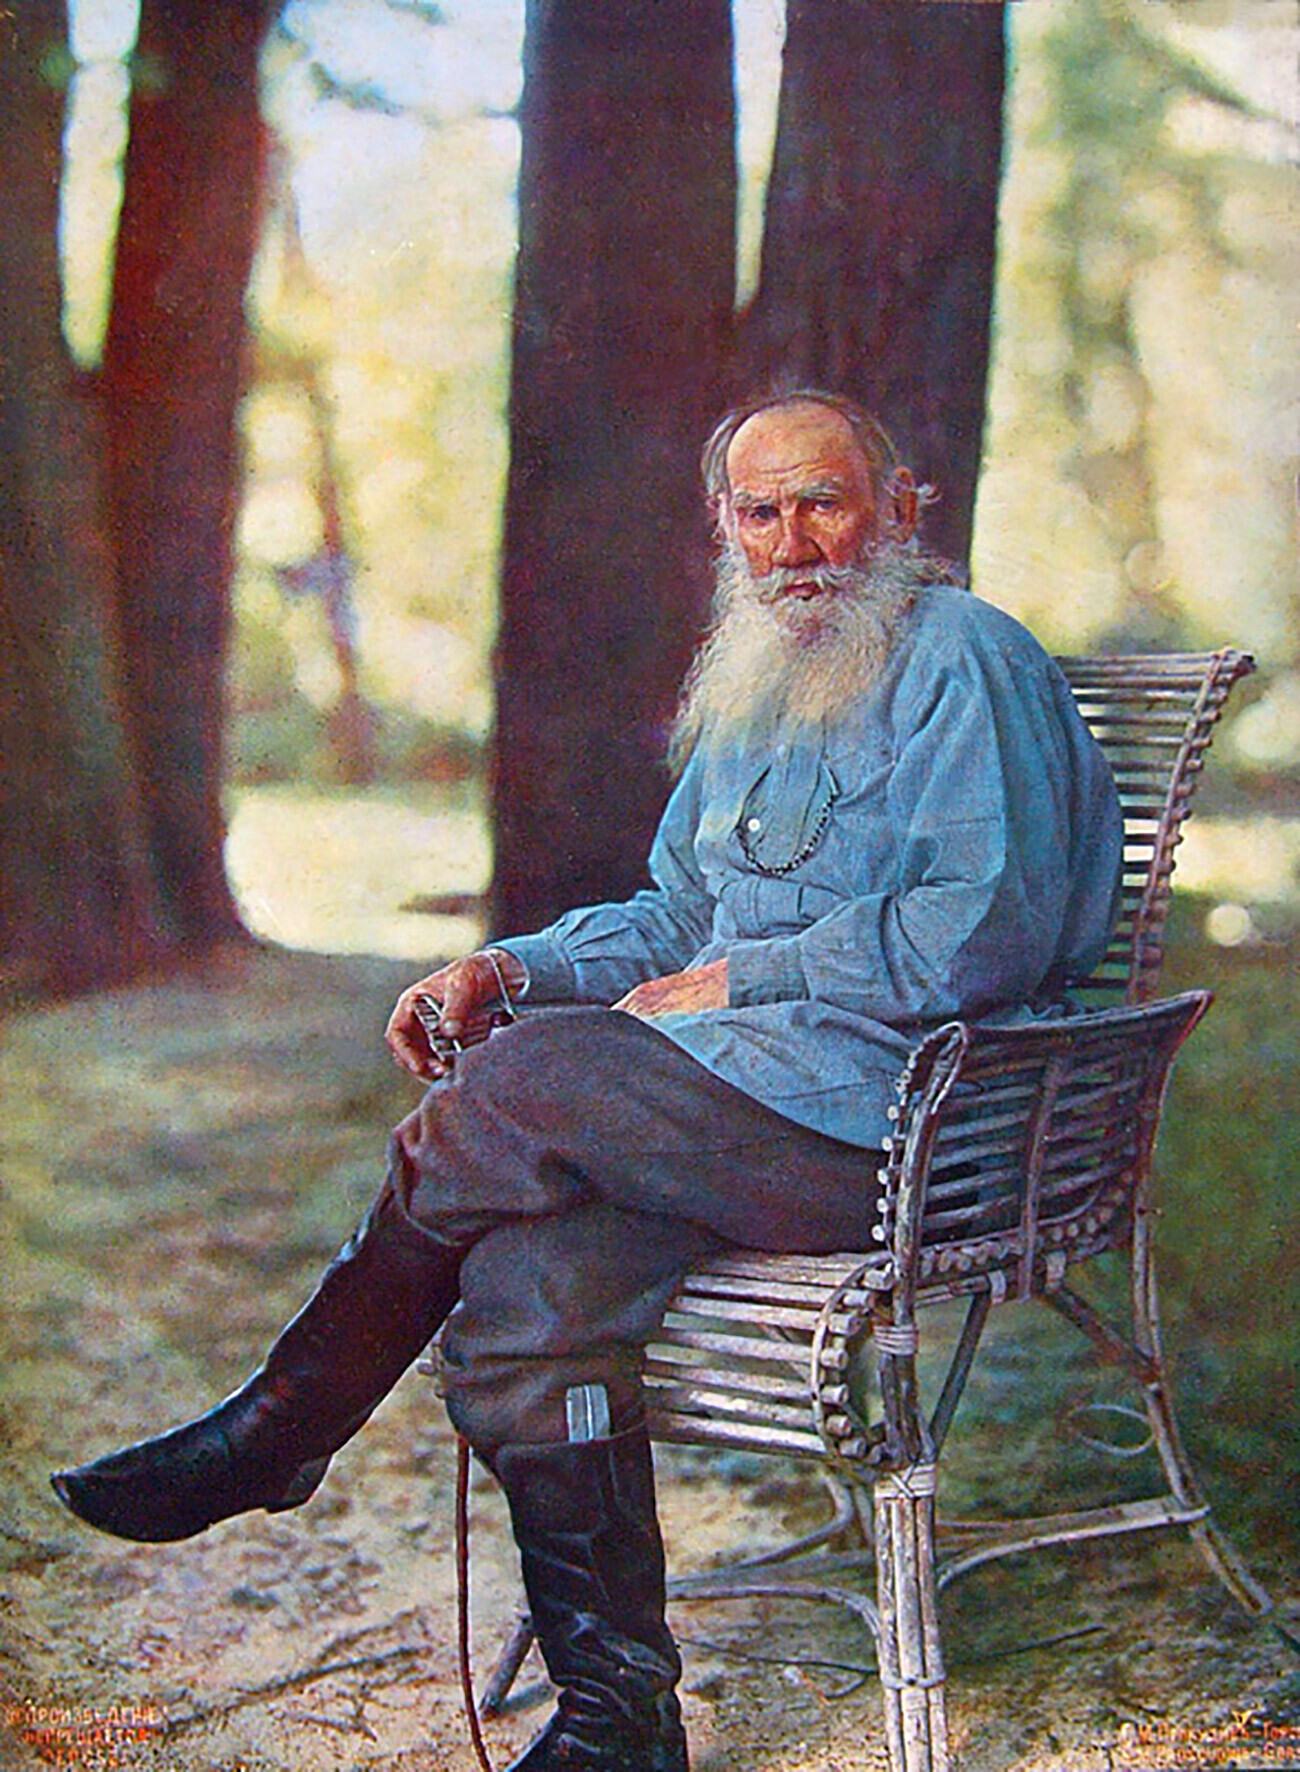 Yásnaia Poliana. Retrato en color de Lev Tolstói tomado tras su regreso de la cabalgata. Publicado por primera vez en el número de agosto de Notas de la Sociedad Técnica Imperial Rusa. 23 de mayo de 1908.